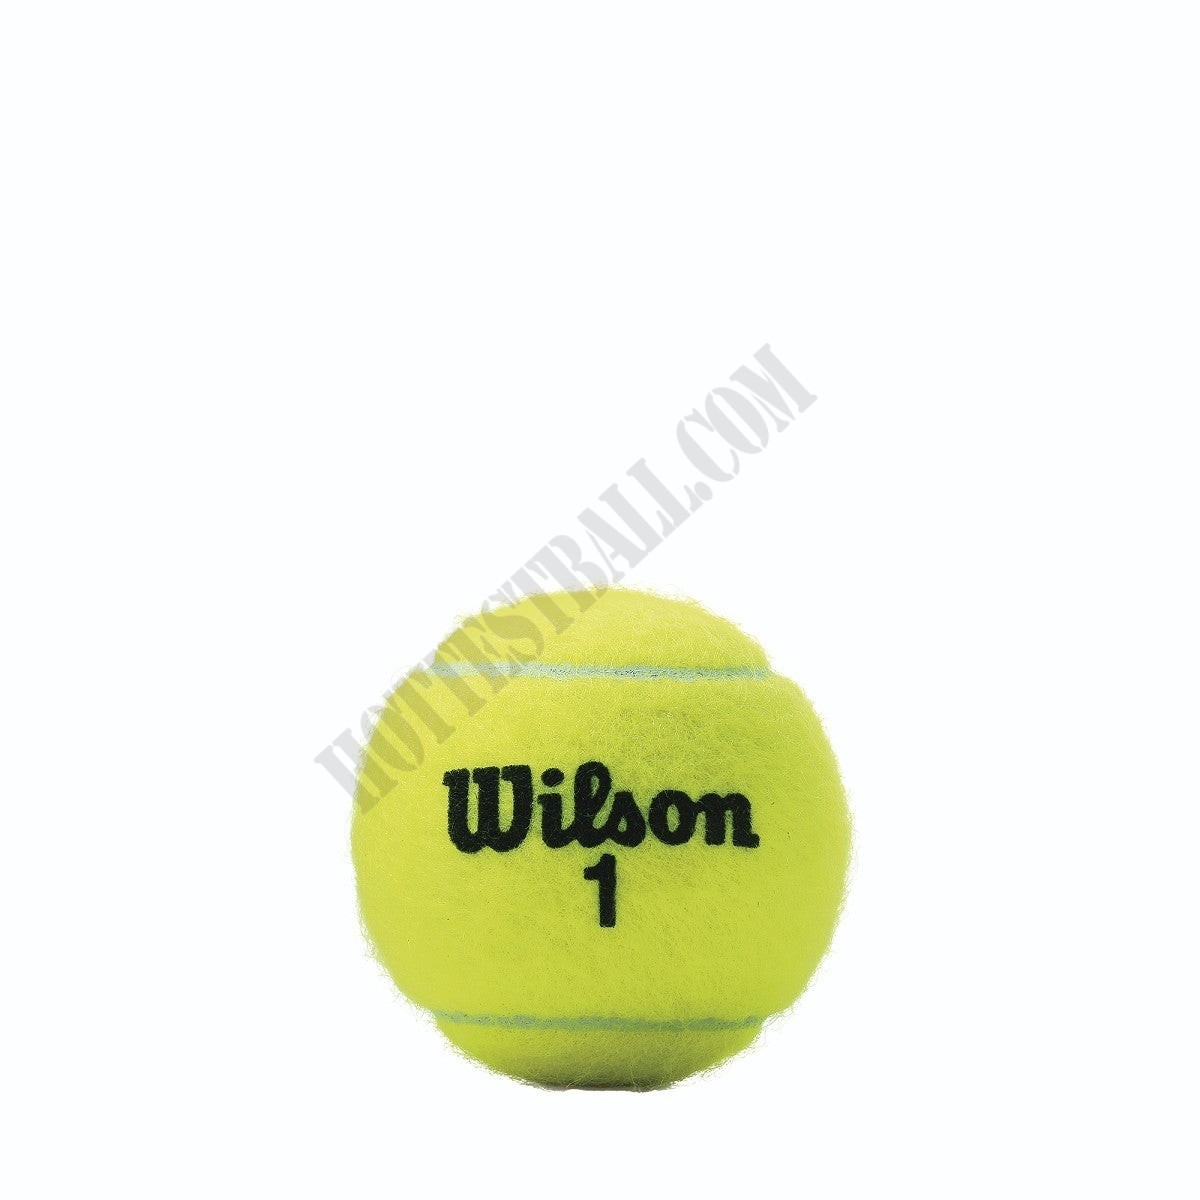 Championship Regular Duty Tennis Balls - 3 BCan (4 Pack) - Wilson Discount Store - -2